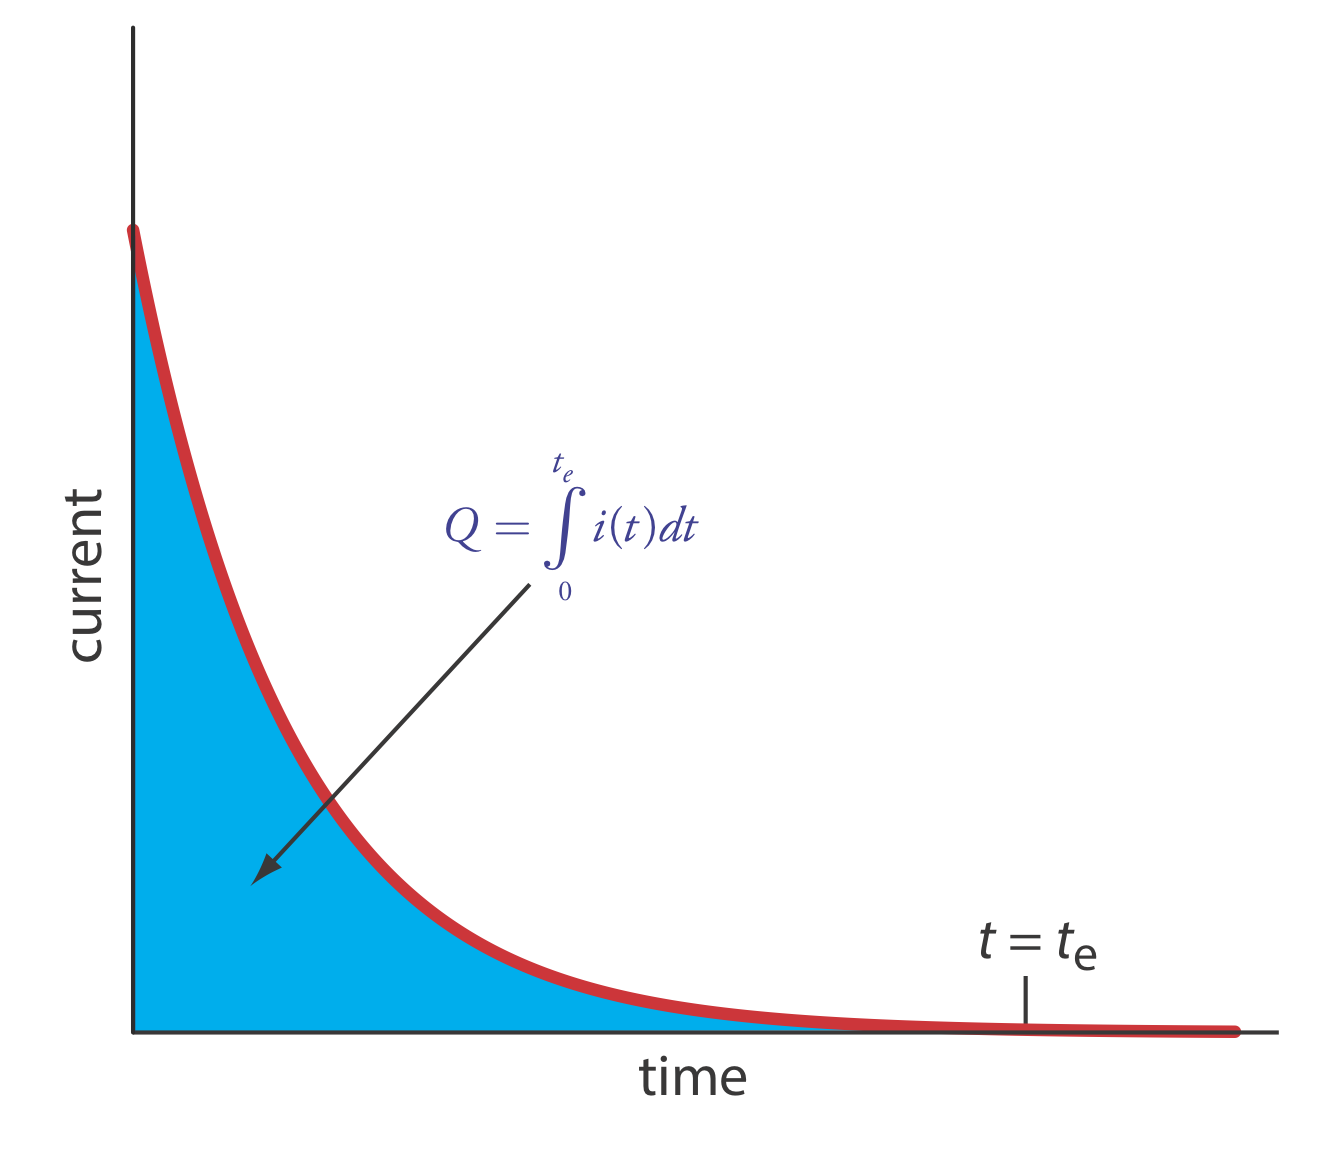 Corriente versus tiempo para un análisis coulométrico de potencial controlado. La corriente medida se muestra por la curva roja. El área integrada bajo la curva, mostrada en azul, es la carga total.